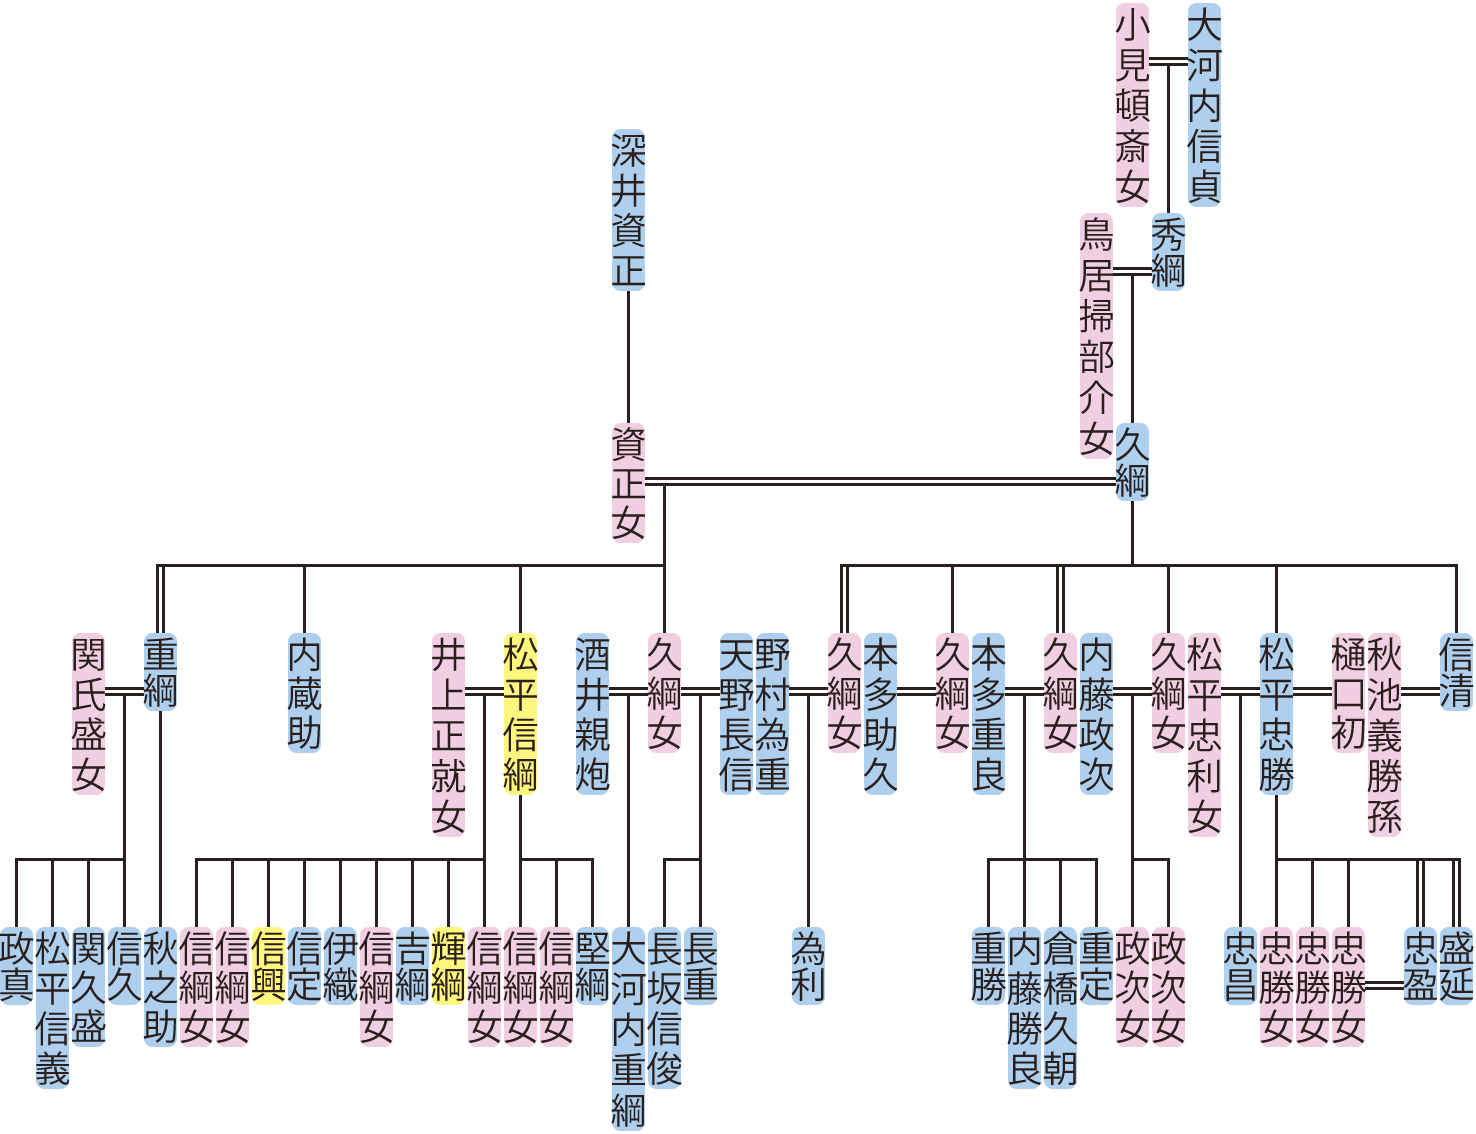 大河内久綱の系図